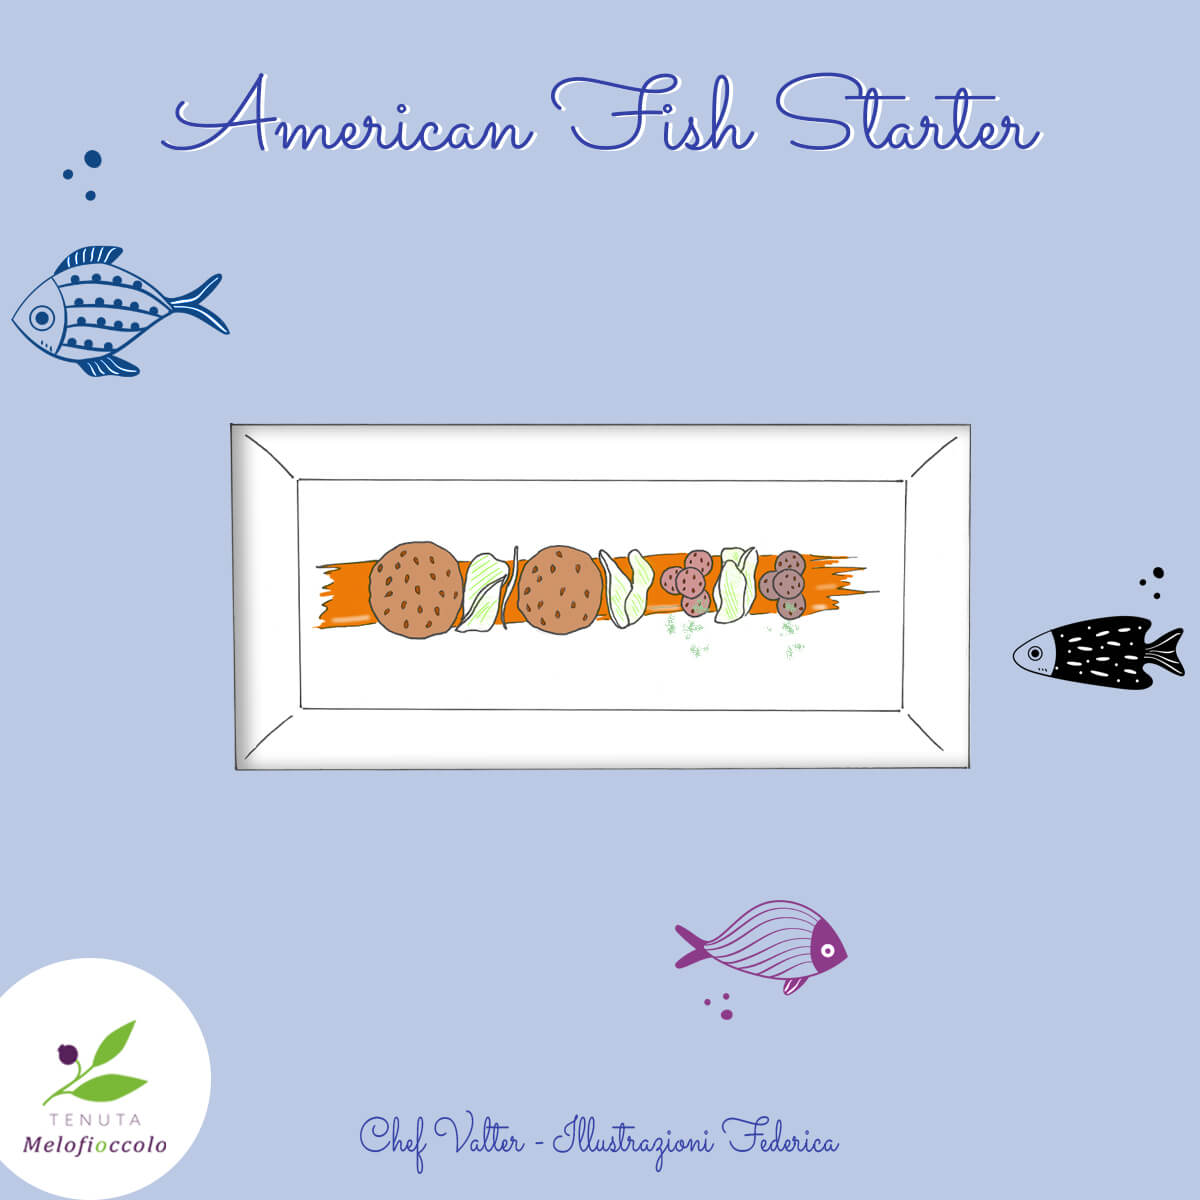 American Fish Starter - tenuta melofioccolo